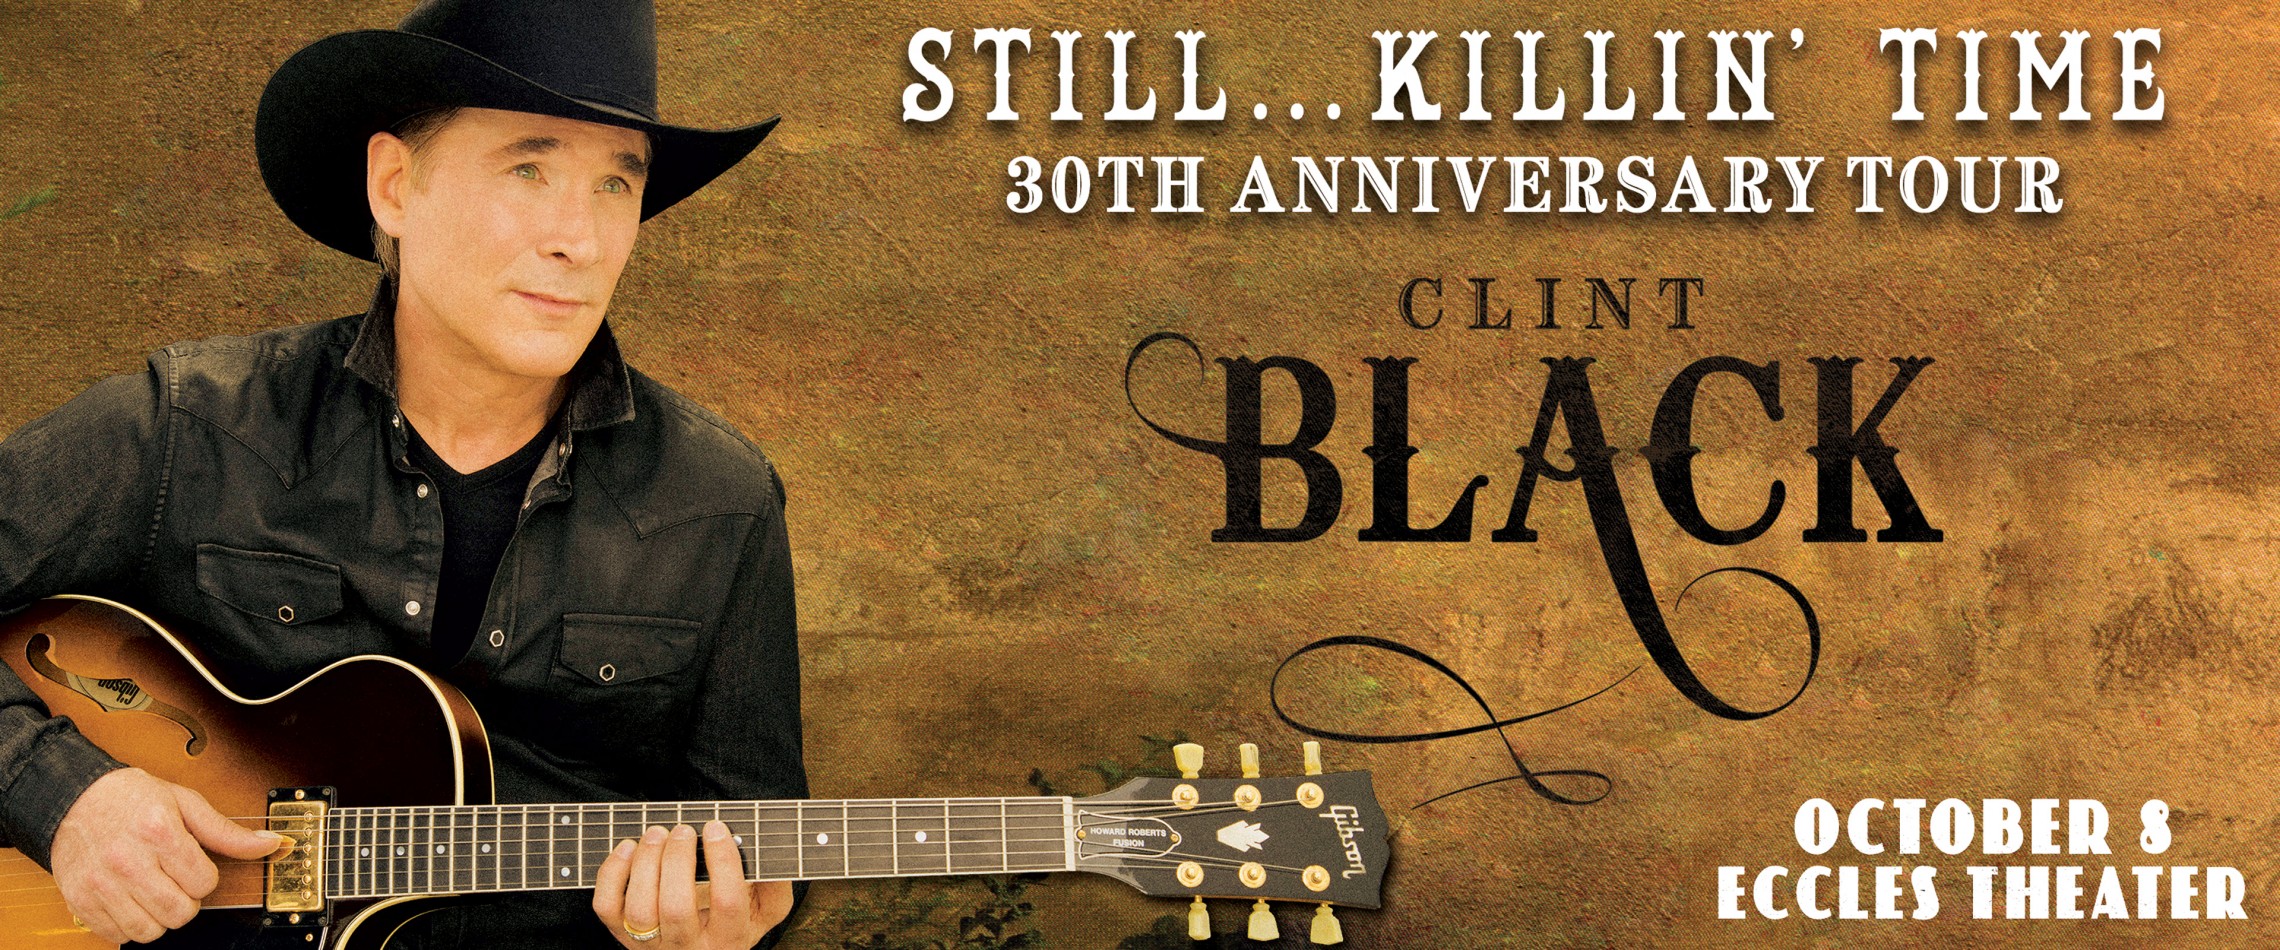 Clint Black Live at the Eccles